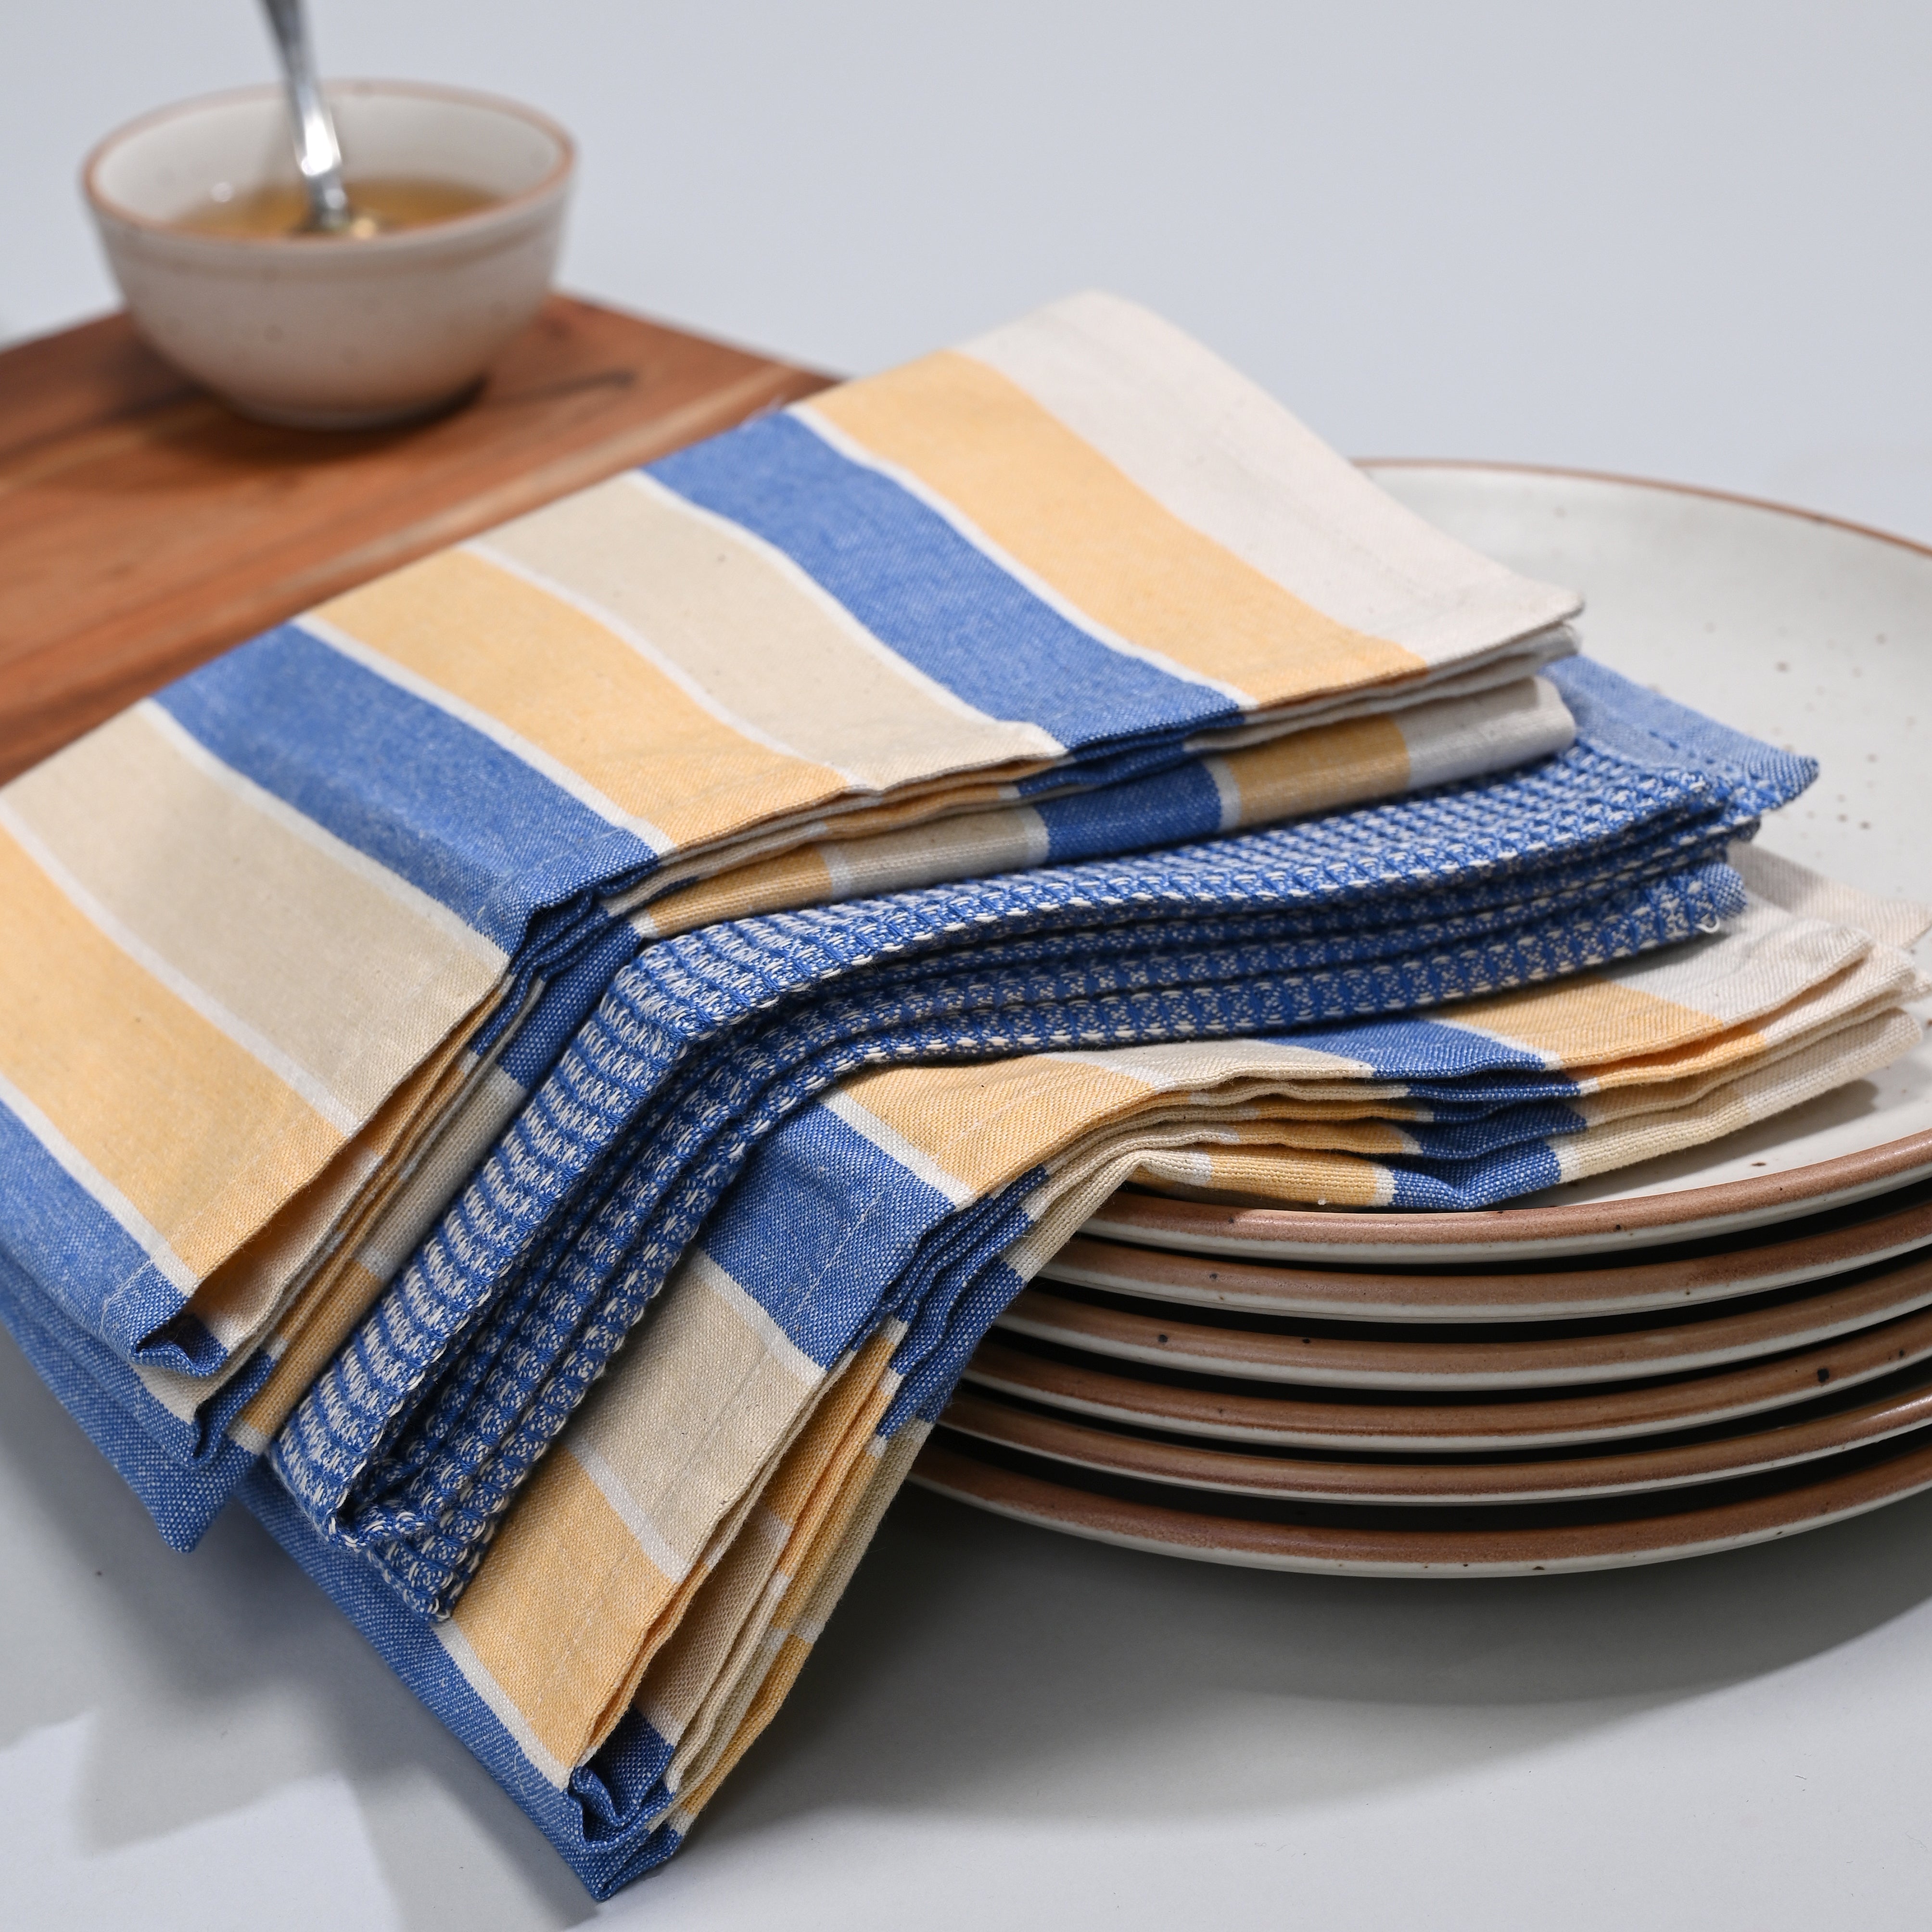 Stripe Kitchen Towel 3 Pc Set